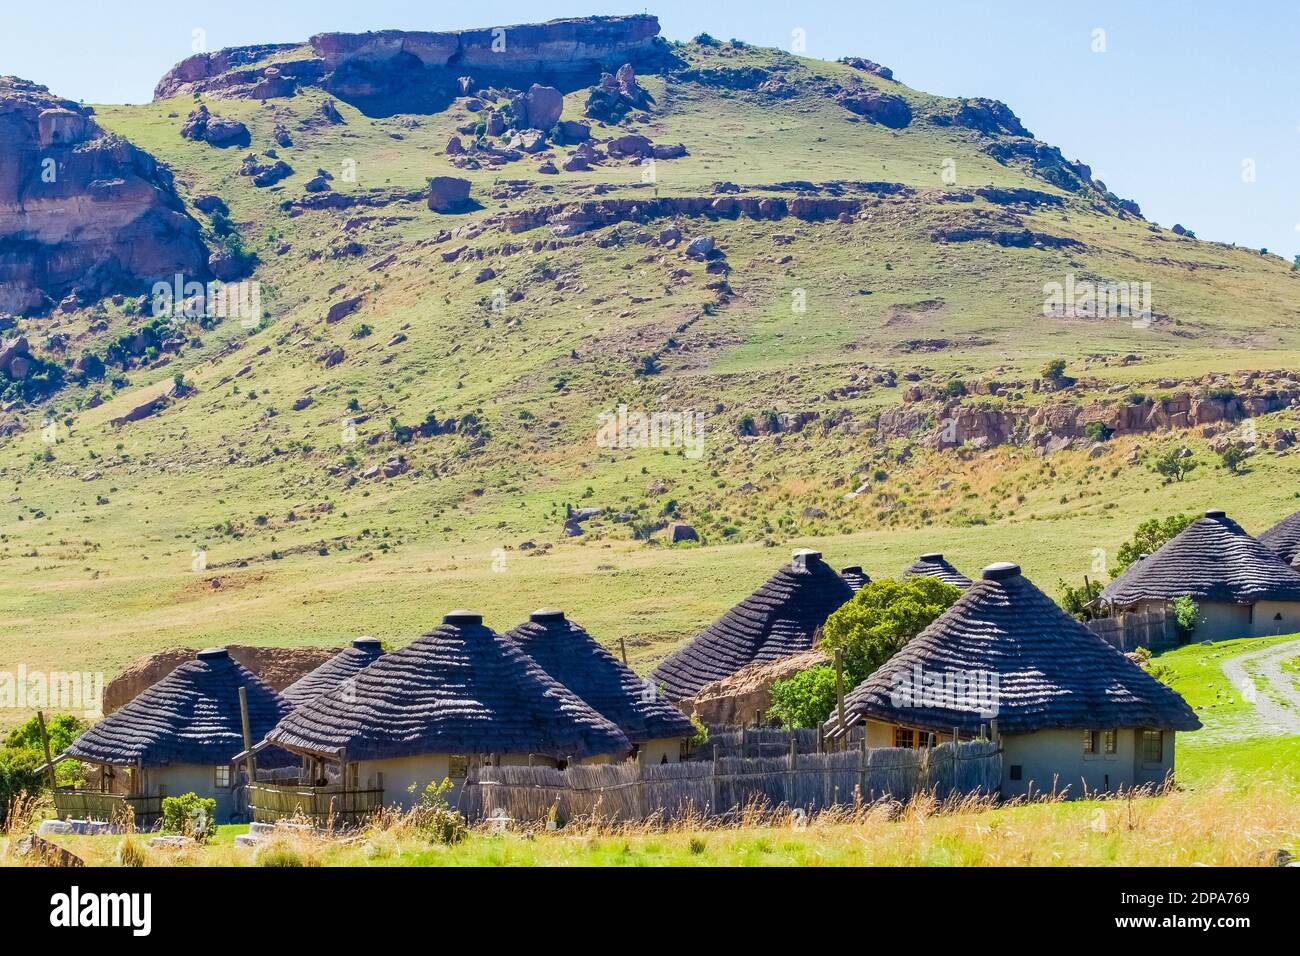 Un piccolo villaggio di rondavels africani sullo sfondo di a. collina rocciosa Foto Stock